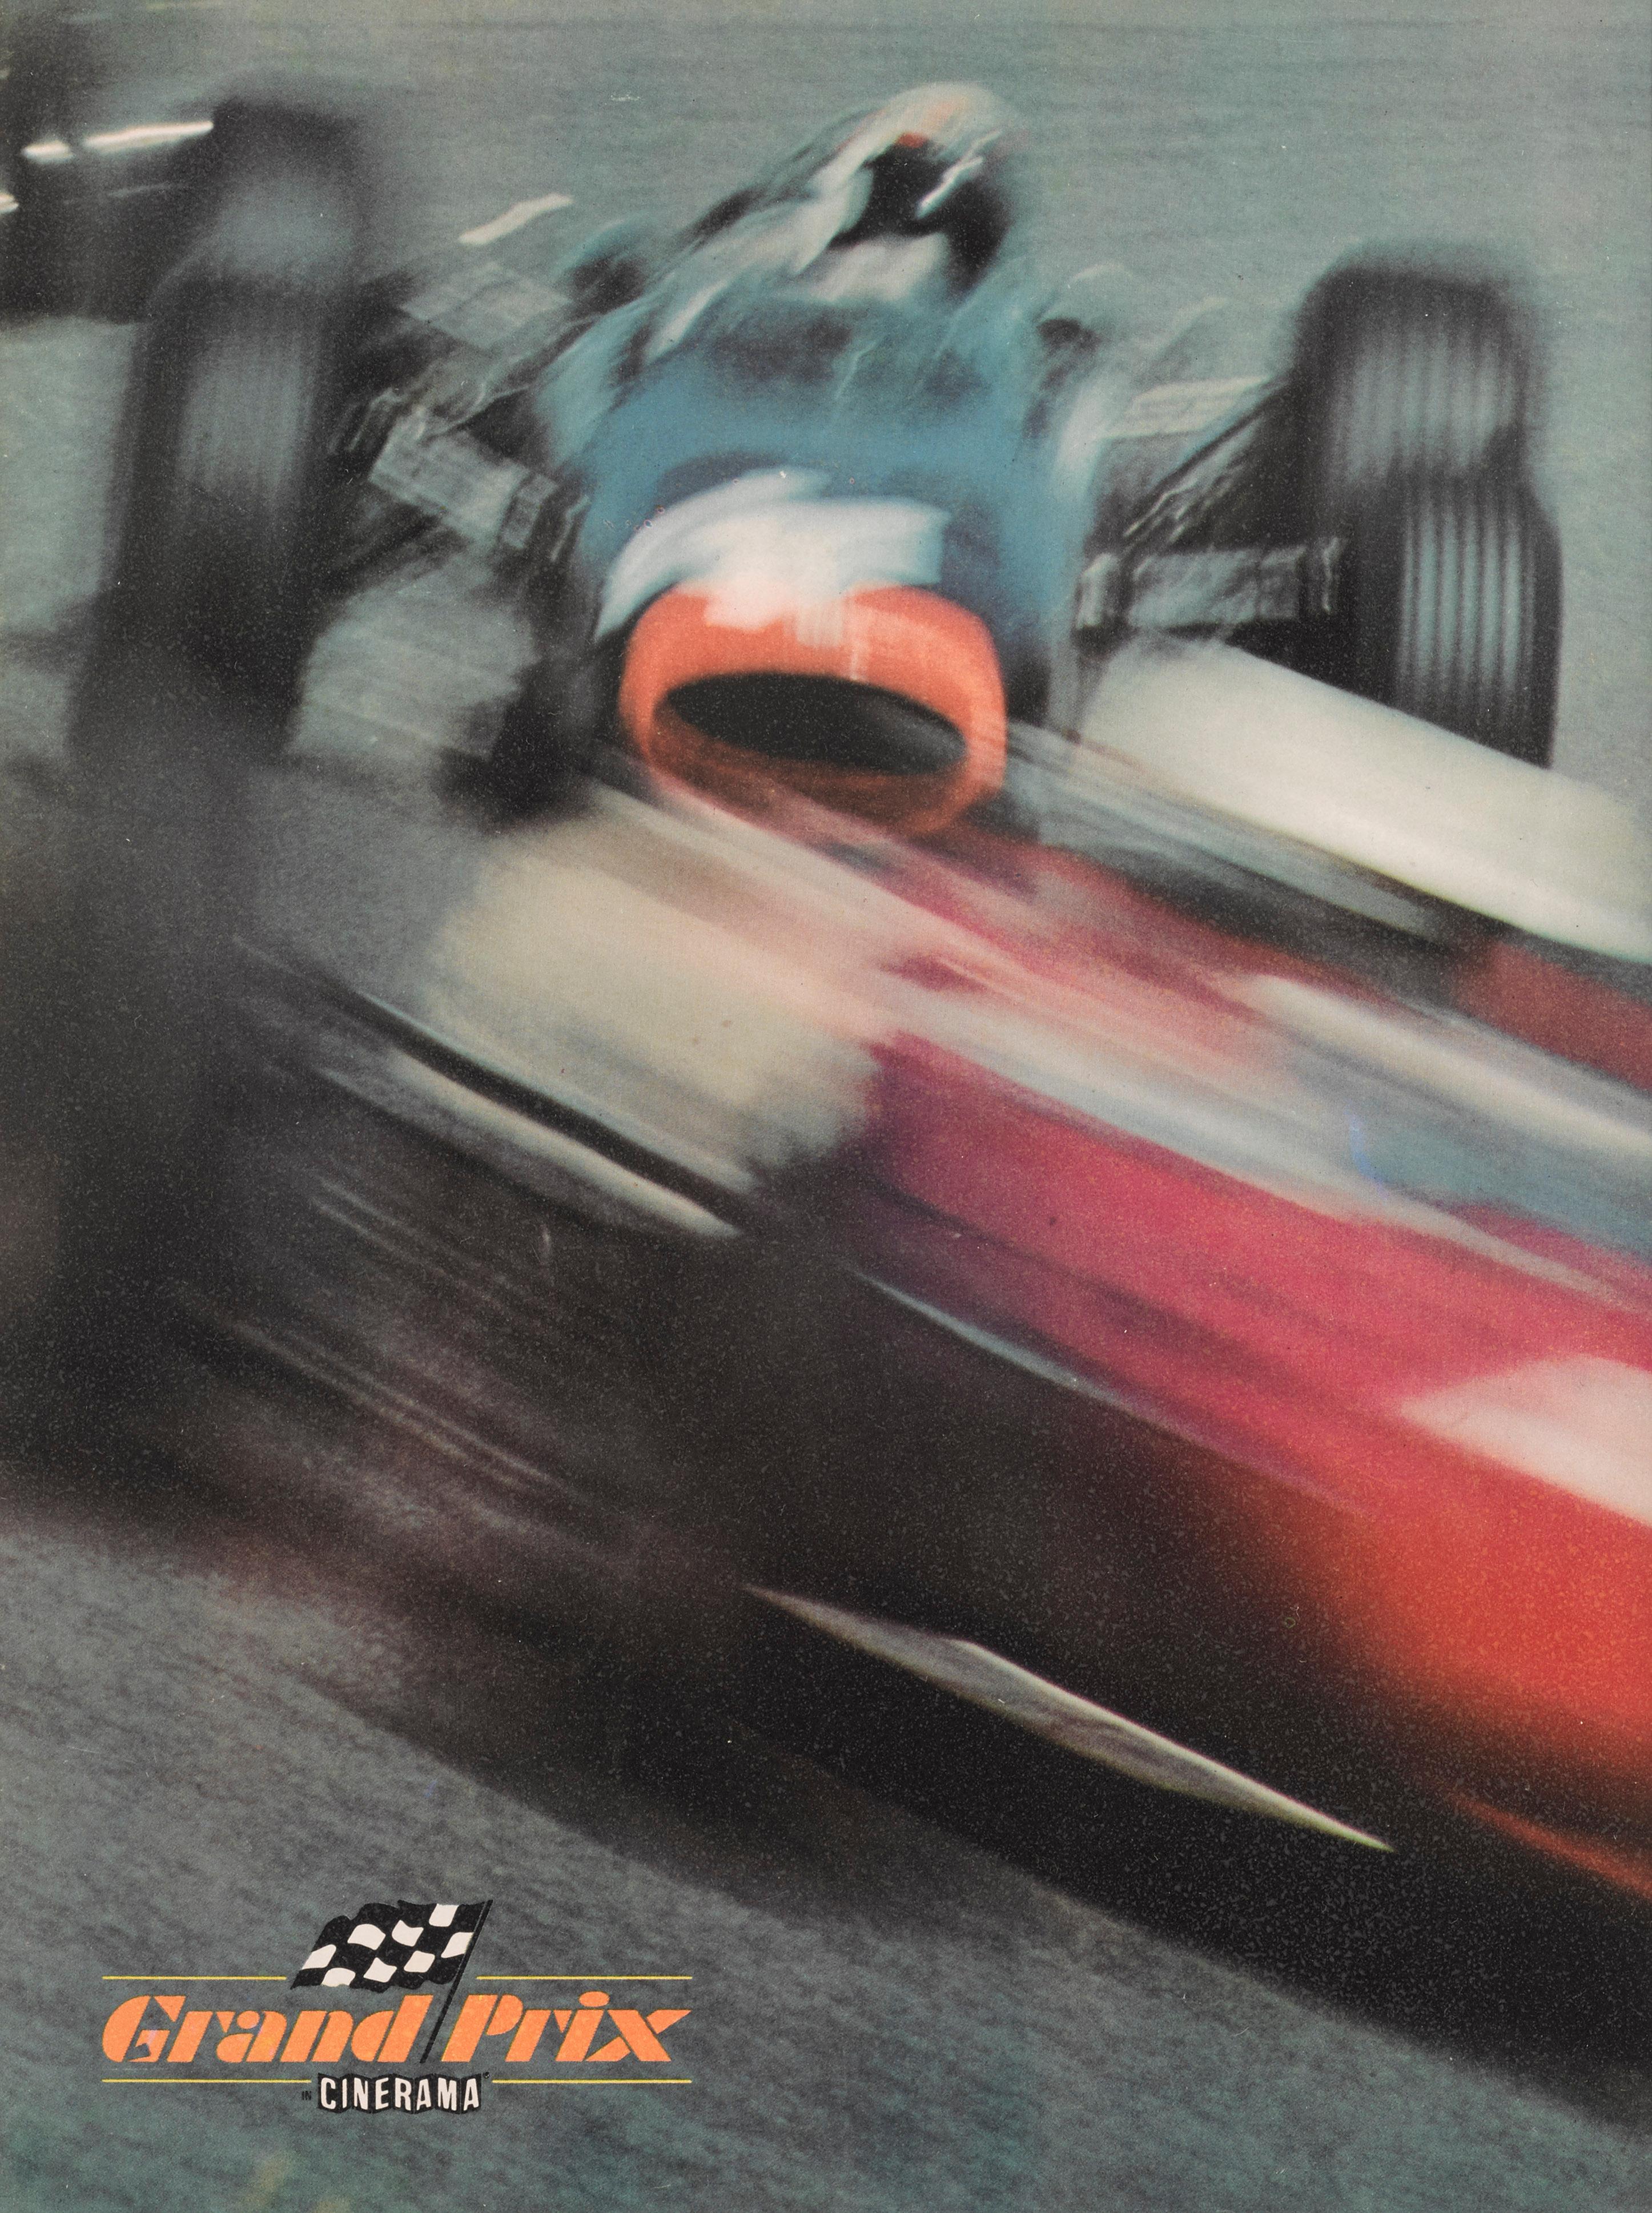 Originales britisches Cinerama-Souvenir-Programmheft.
Dieser fiktive, populäre Motorsportfilm erzählt die Geschichte der Formel-1-Saison 1966 aus der Sicht von vier Formel-1-Fahrern. Der Film enthält Aufnahmen aus dem echten Rennsport und Cameos